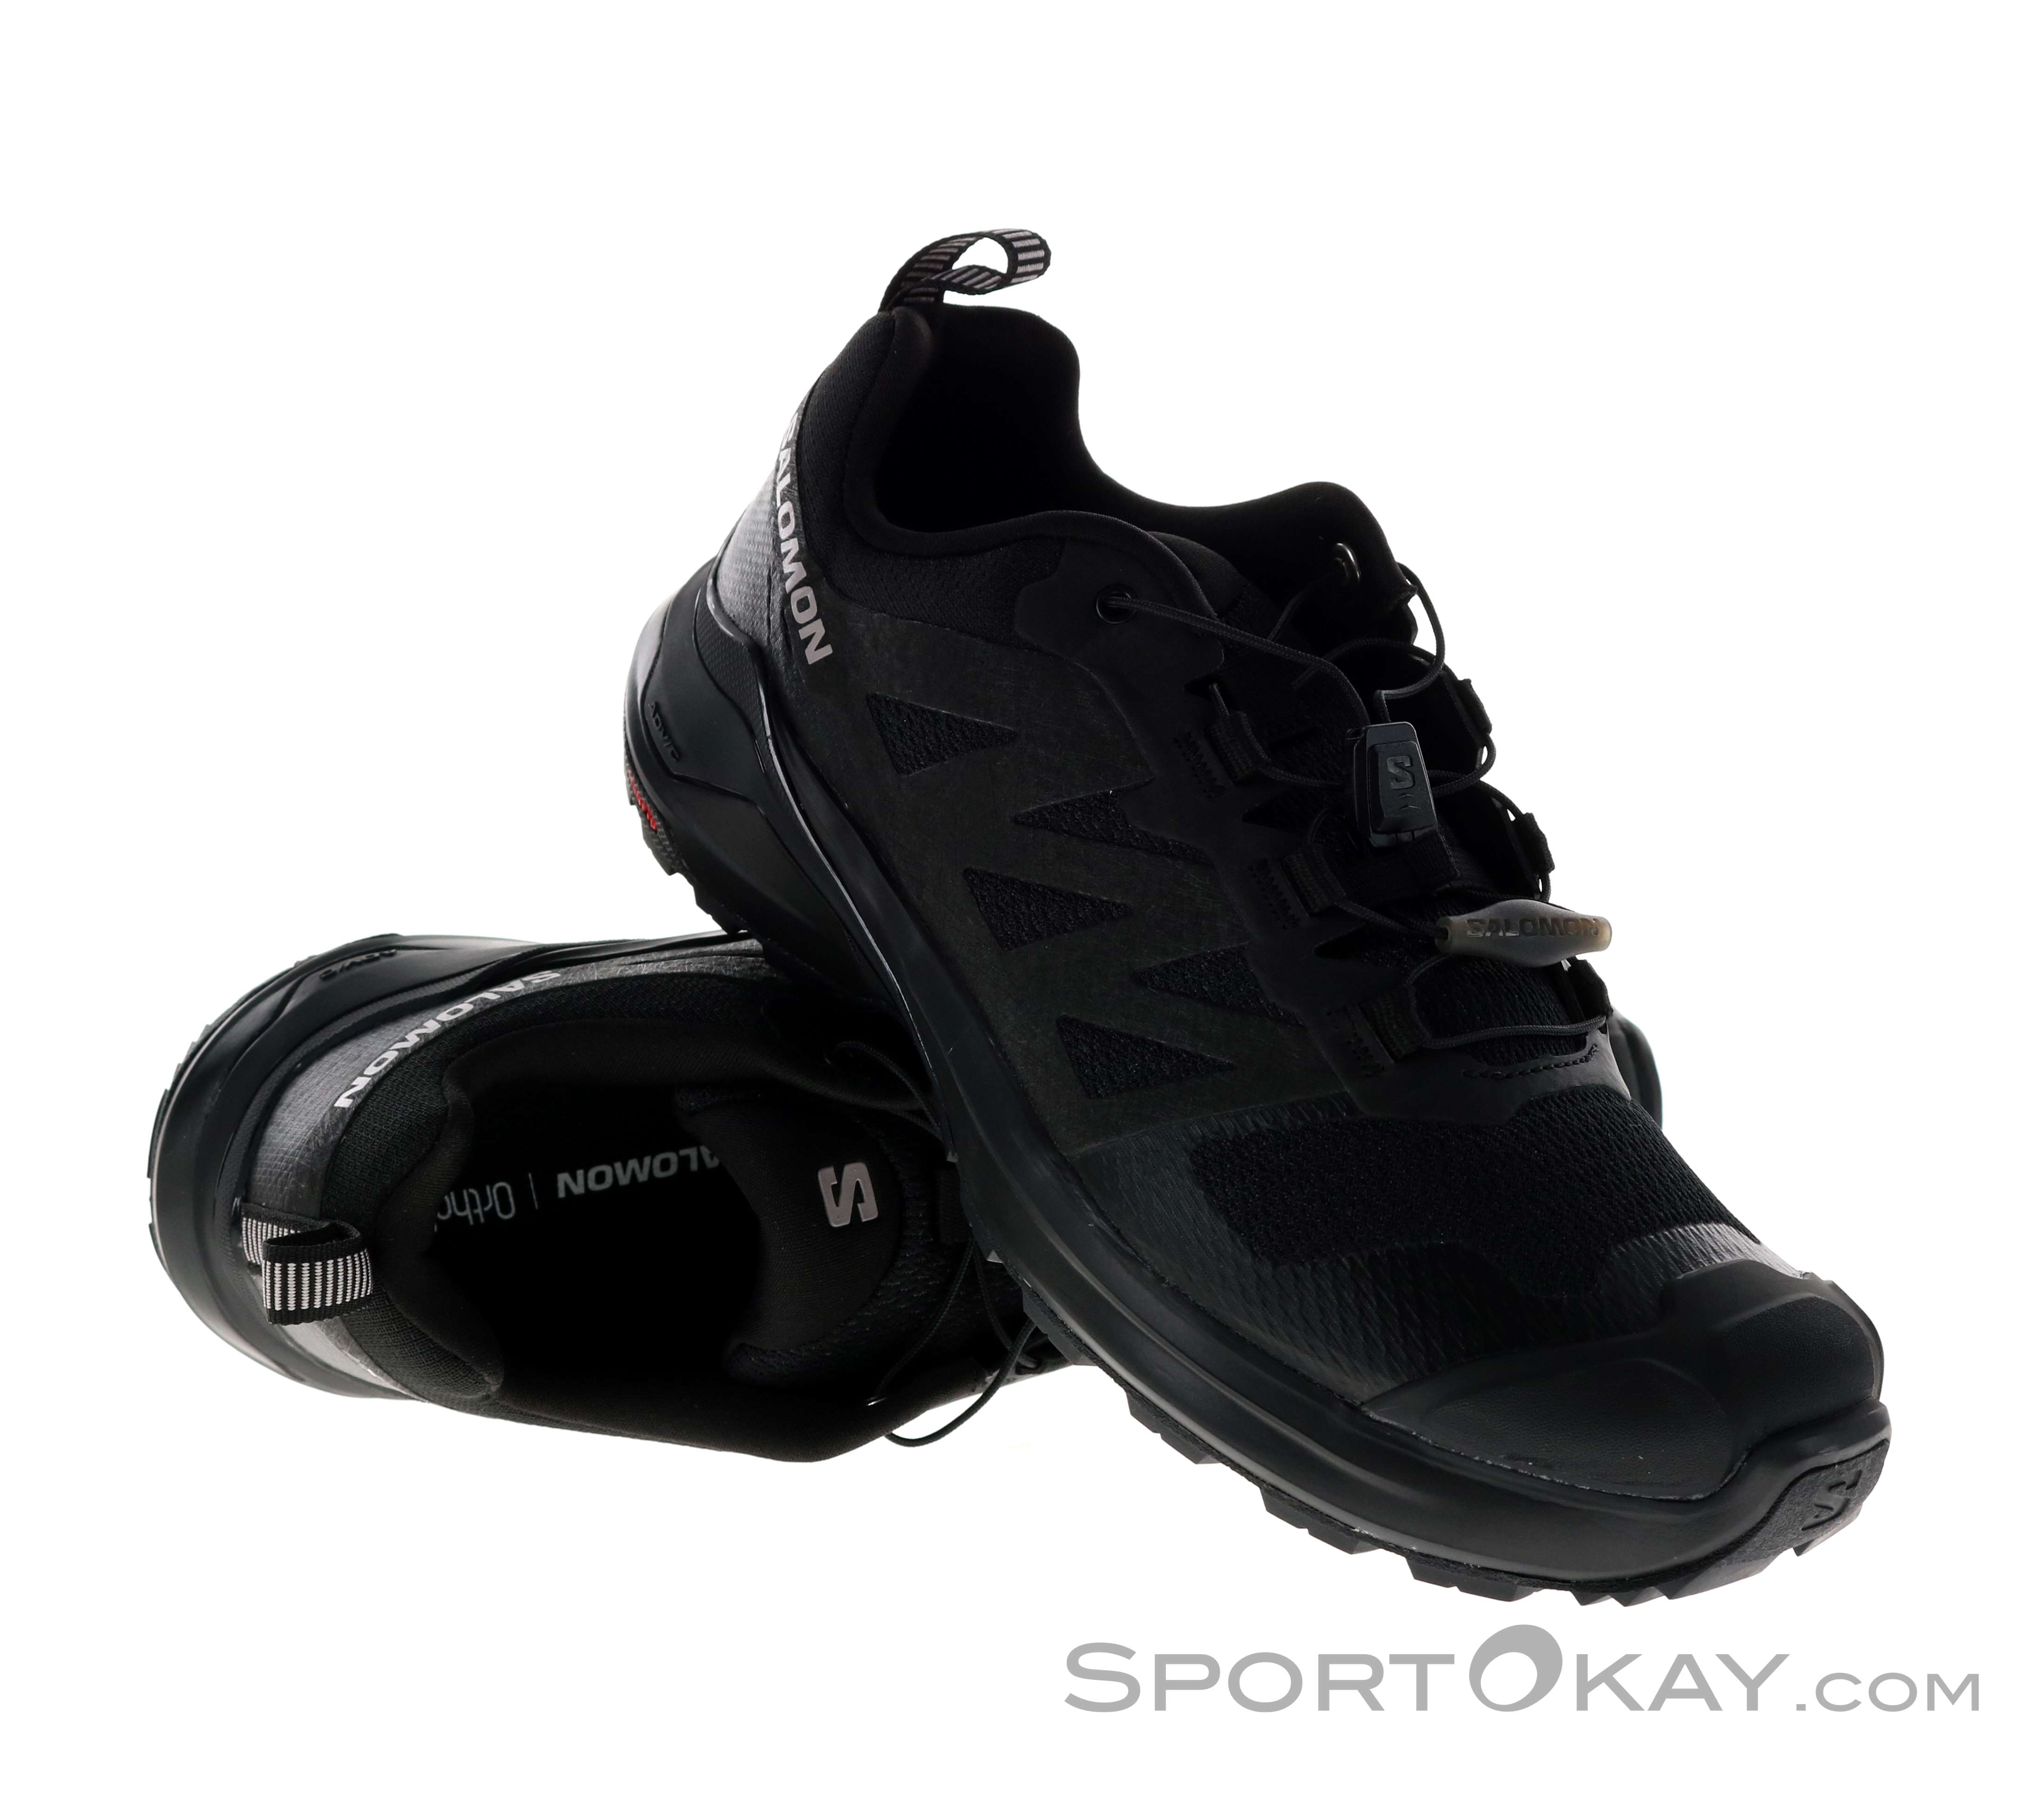 Salomon XA Pro 3D v8 GTX Mujer Calzado trail running Gore-Tex - Calzado de  marcha para rastreo - Calzado para marcha - Marcha - Todos